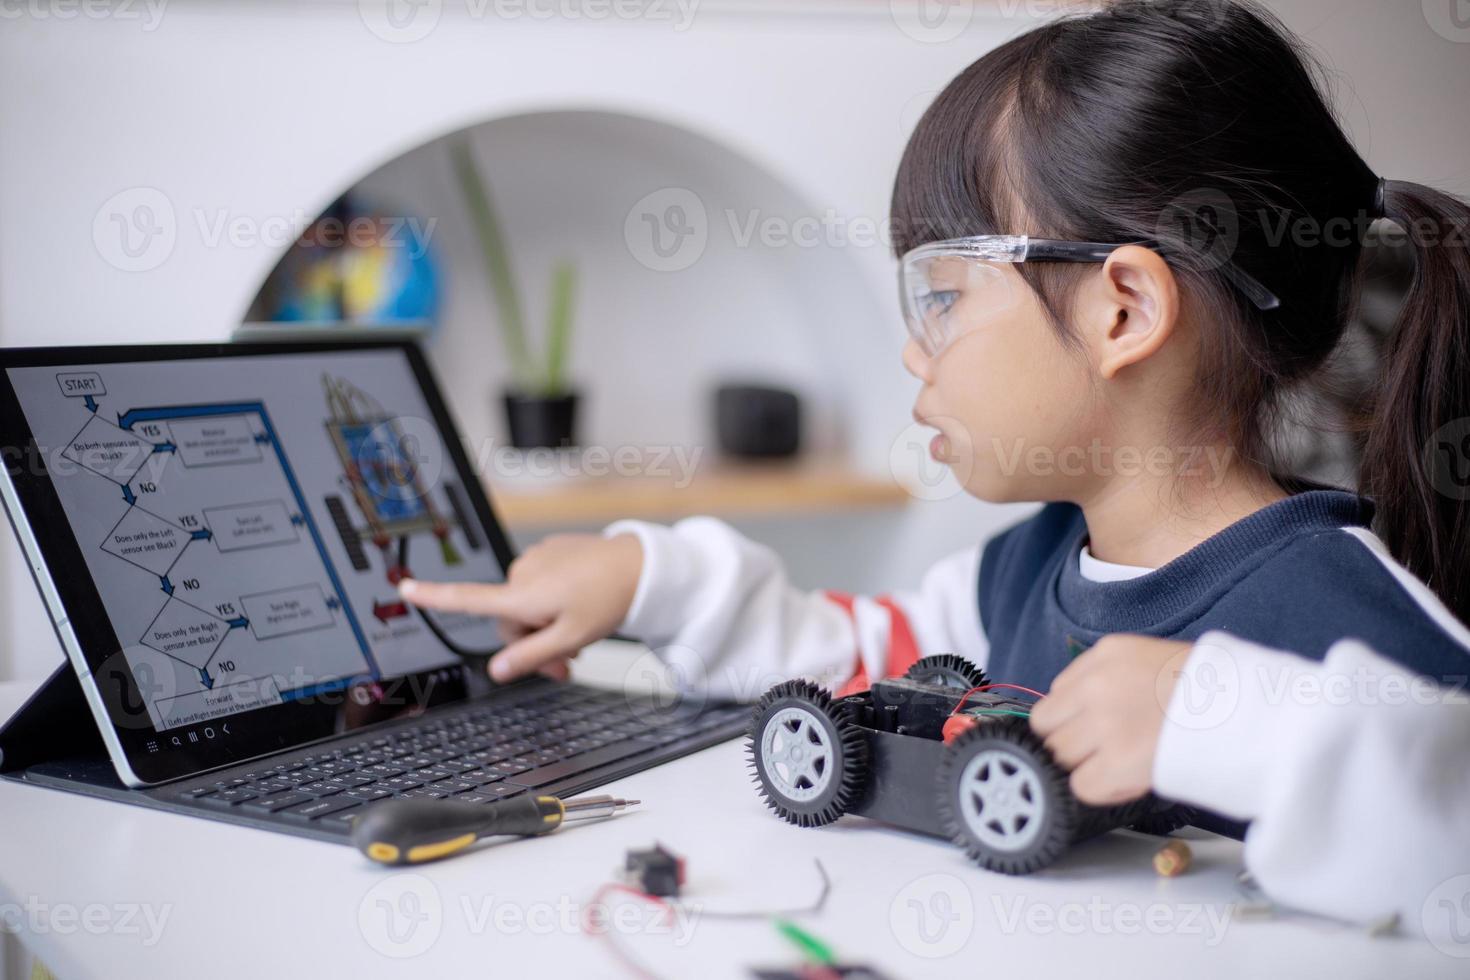 les étudiants asiatiques apprennent à la maison à coder des voitures robotisées et des câbles de cartes électroniques dans la tige, la vapeur, la technologie des sciences de l'ingénierie mathématique le code informatique dans la robotique pour le concept des enfants photo